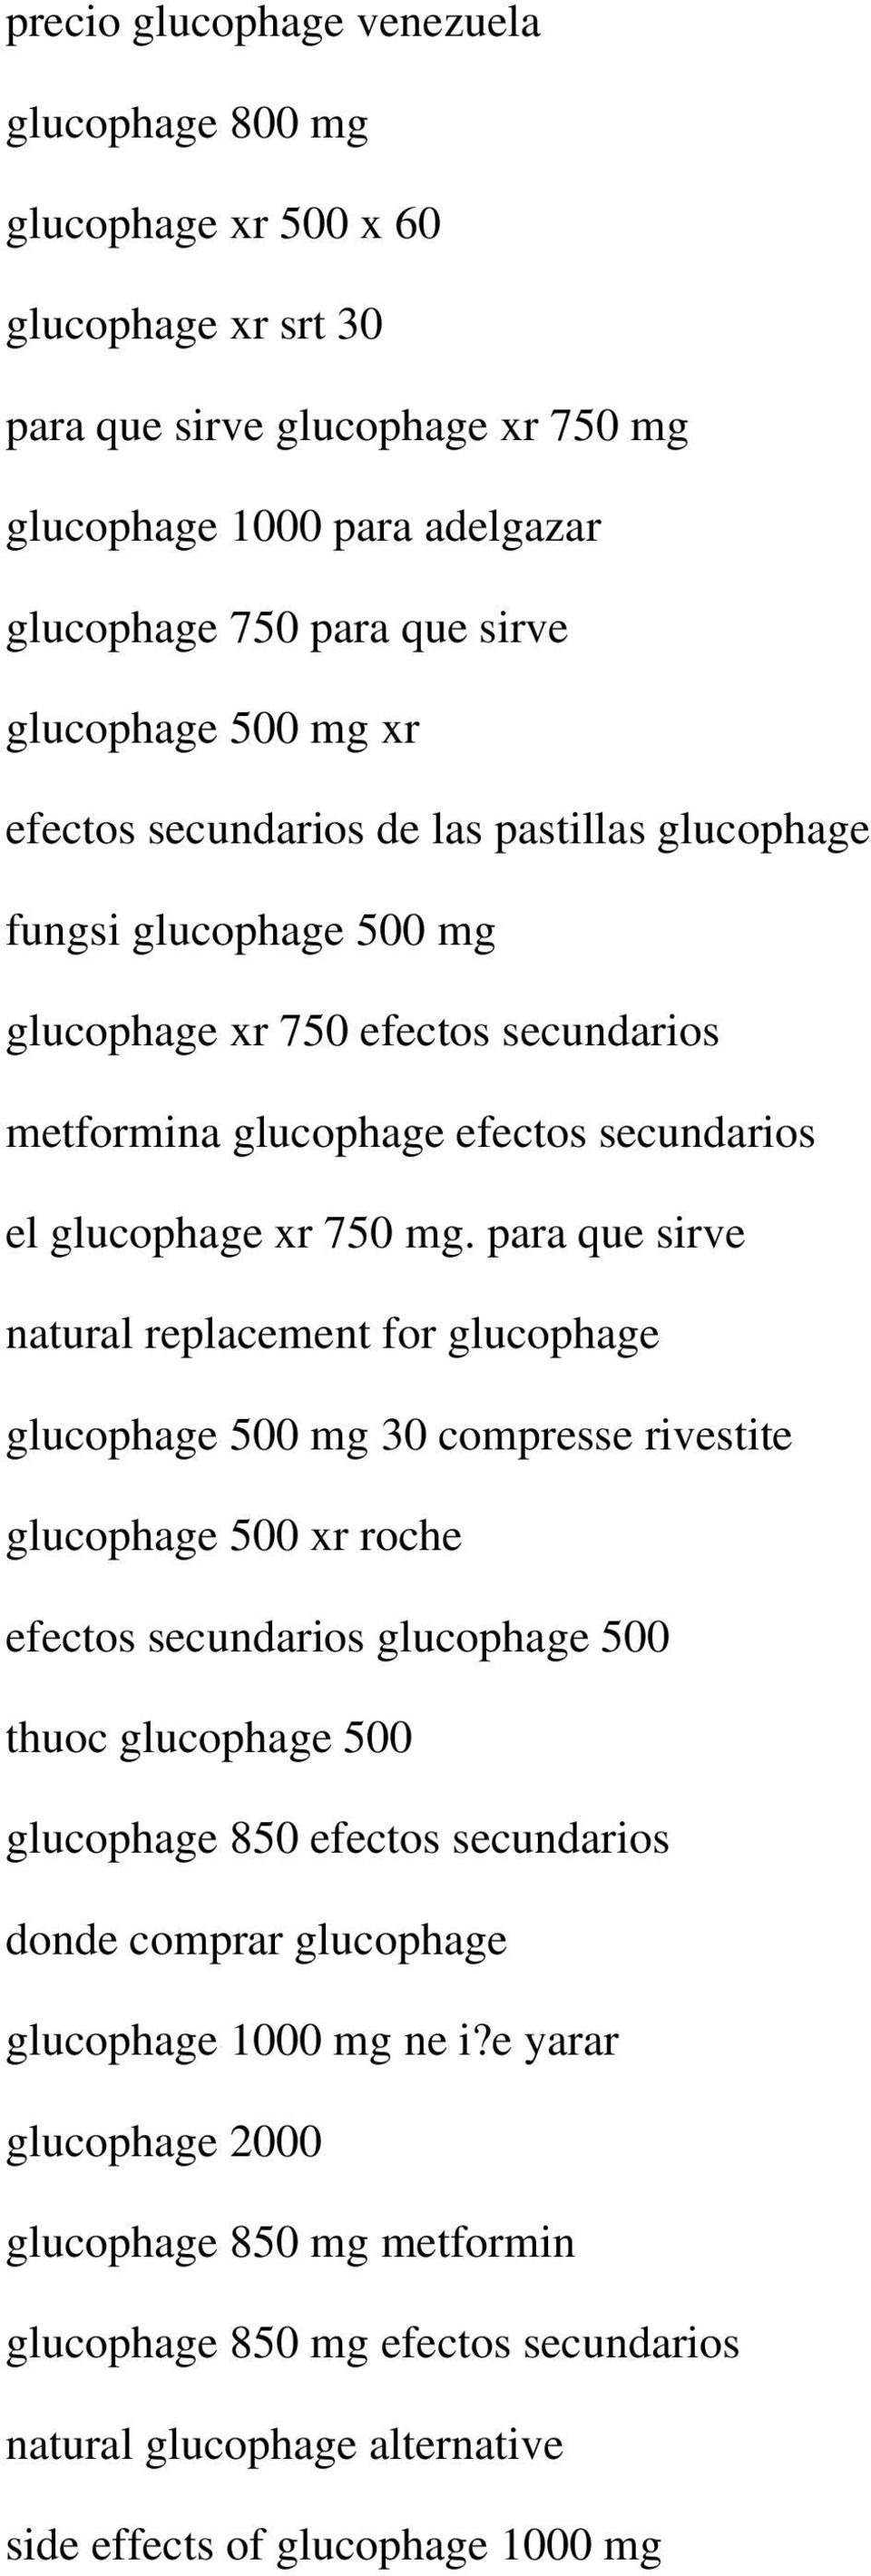 para que sirve natural replacement for glucophage glucophage 500 mg 30 compresse rivestite glucophage 500 xr roche efectos secundarios glucophage 500 thuoc glucophage 500 glucophage 850 efectos